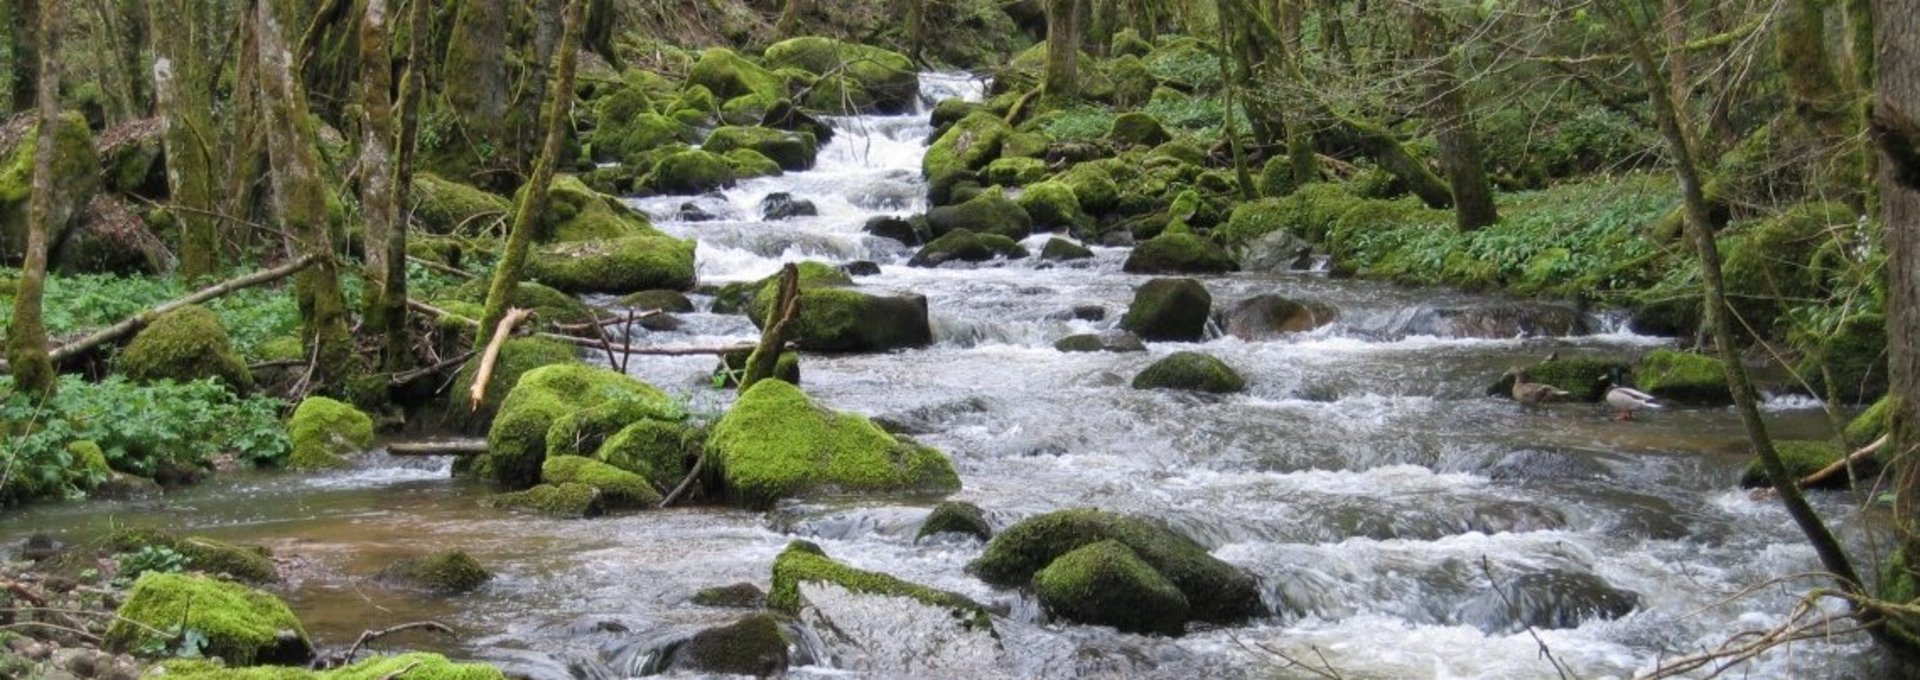 Der Steinbach - ein naturnahes Gewässer